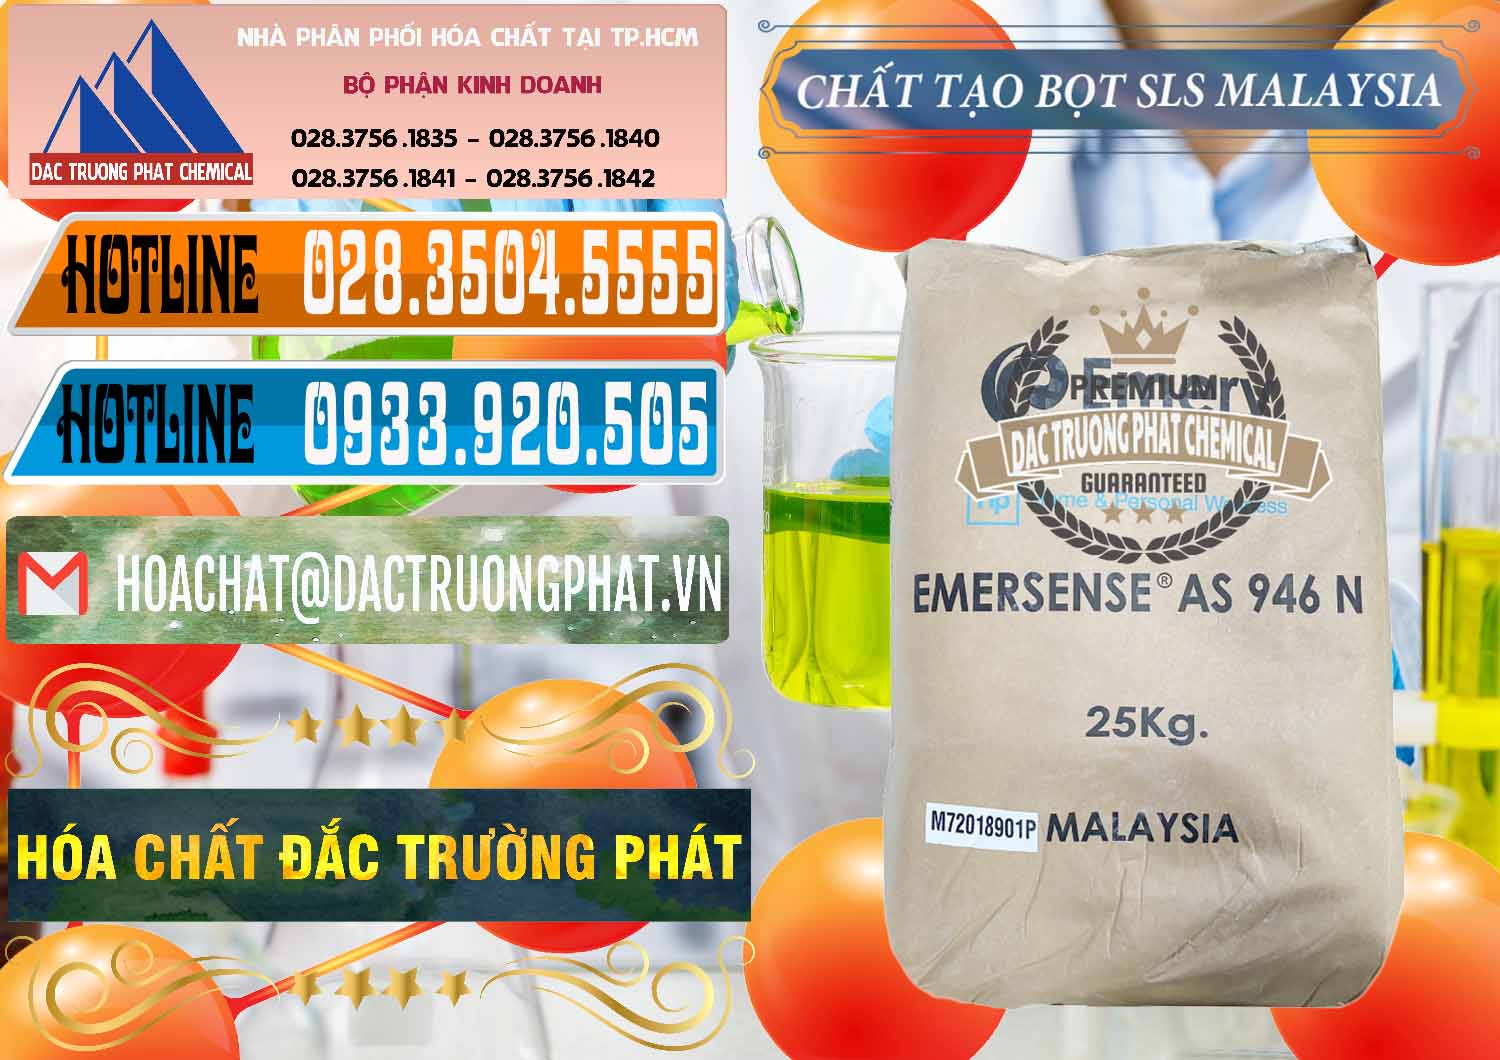 Nhà phân phối & bán Chất Tạo Bọt SLS Emery - Emersense AS 946N Mã Lai Malaysia - 0423 - Đơn vị chuyên kinh doanh & phân phối hóa chất tại TP.HCM - stmp.net